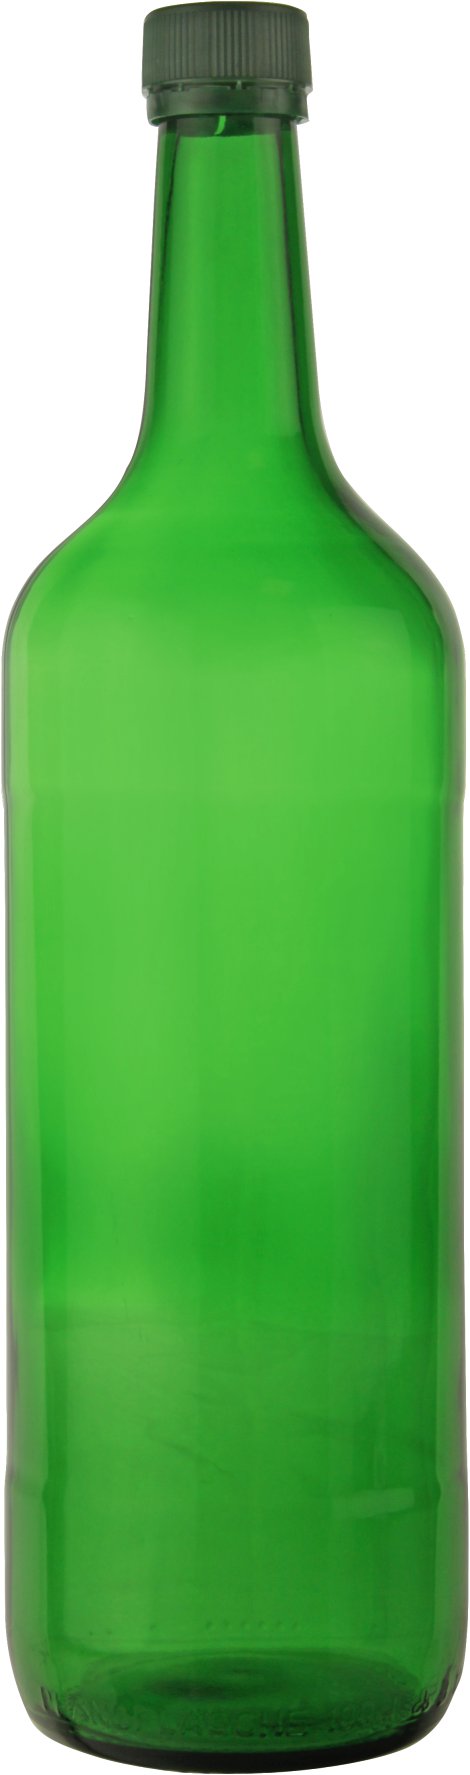 Mostfruchtflasche mit Verschluss 0,75 l 6 Stk.